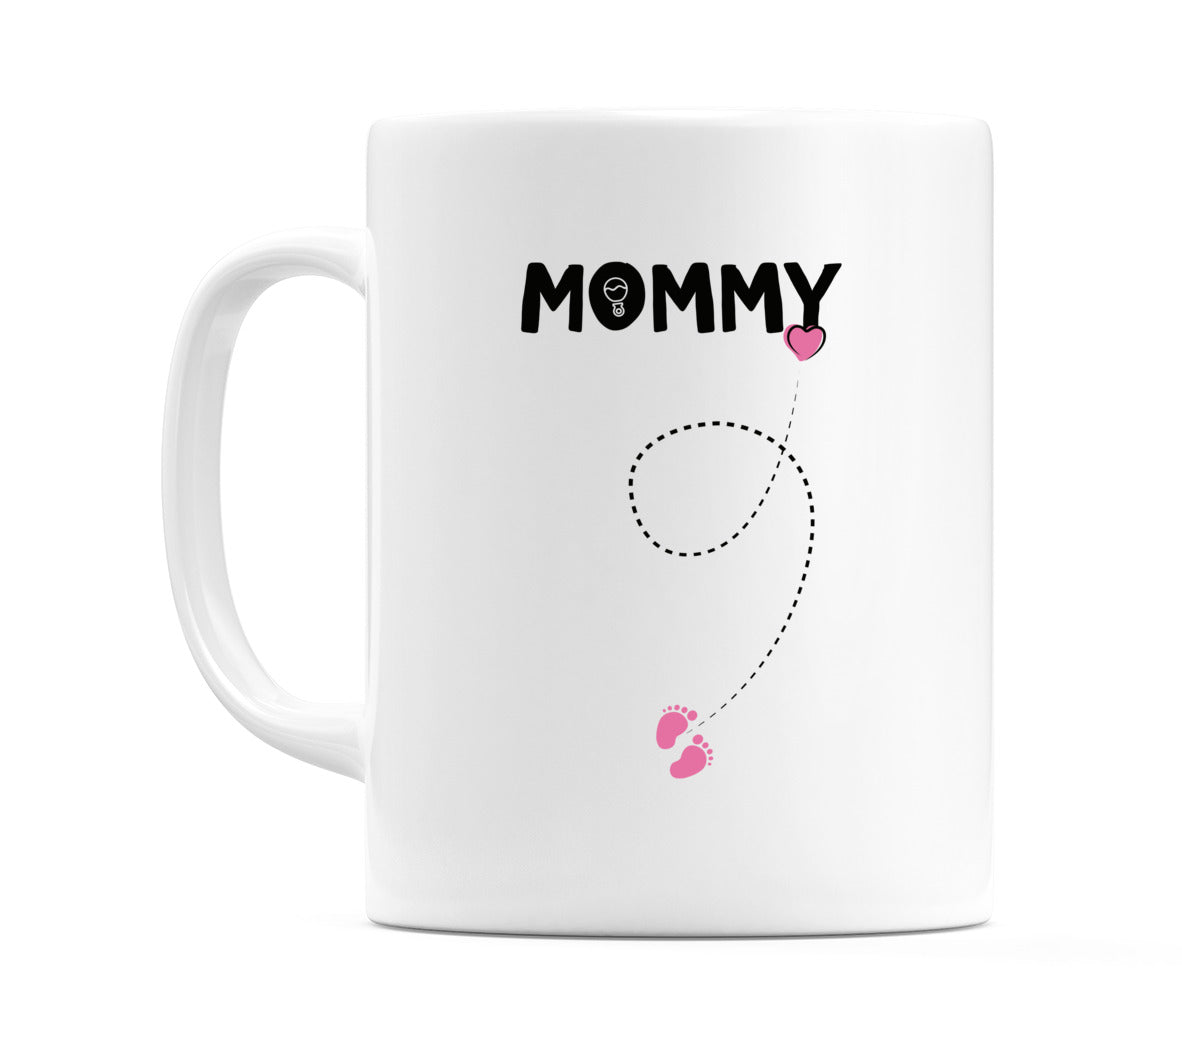 Mommy Mug